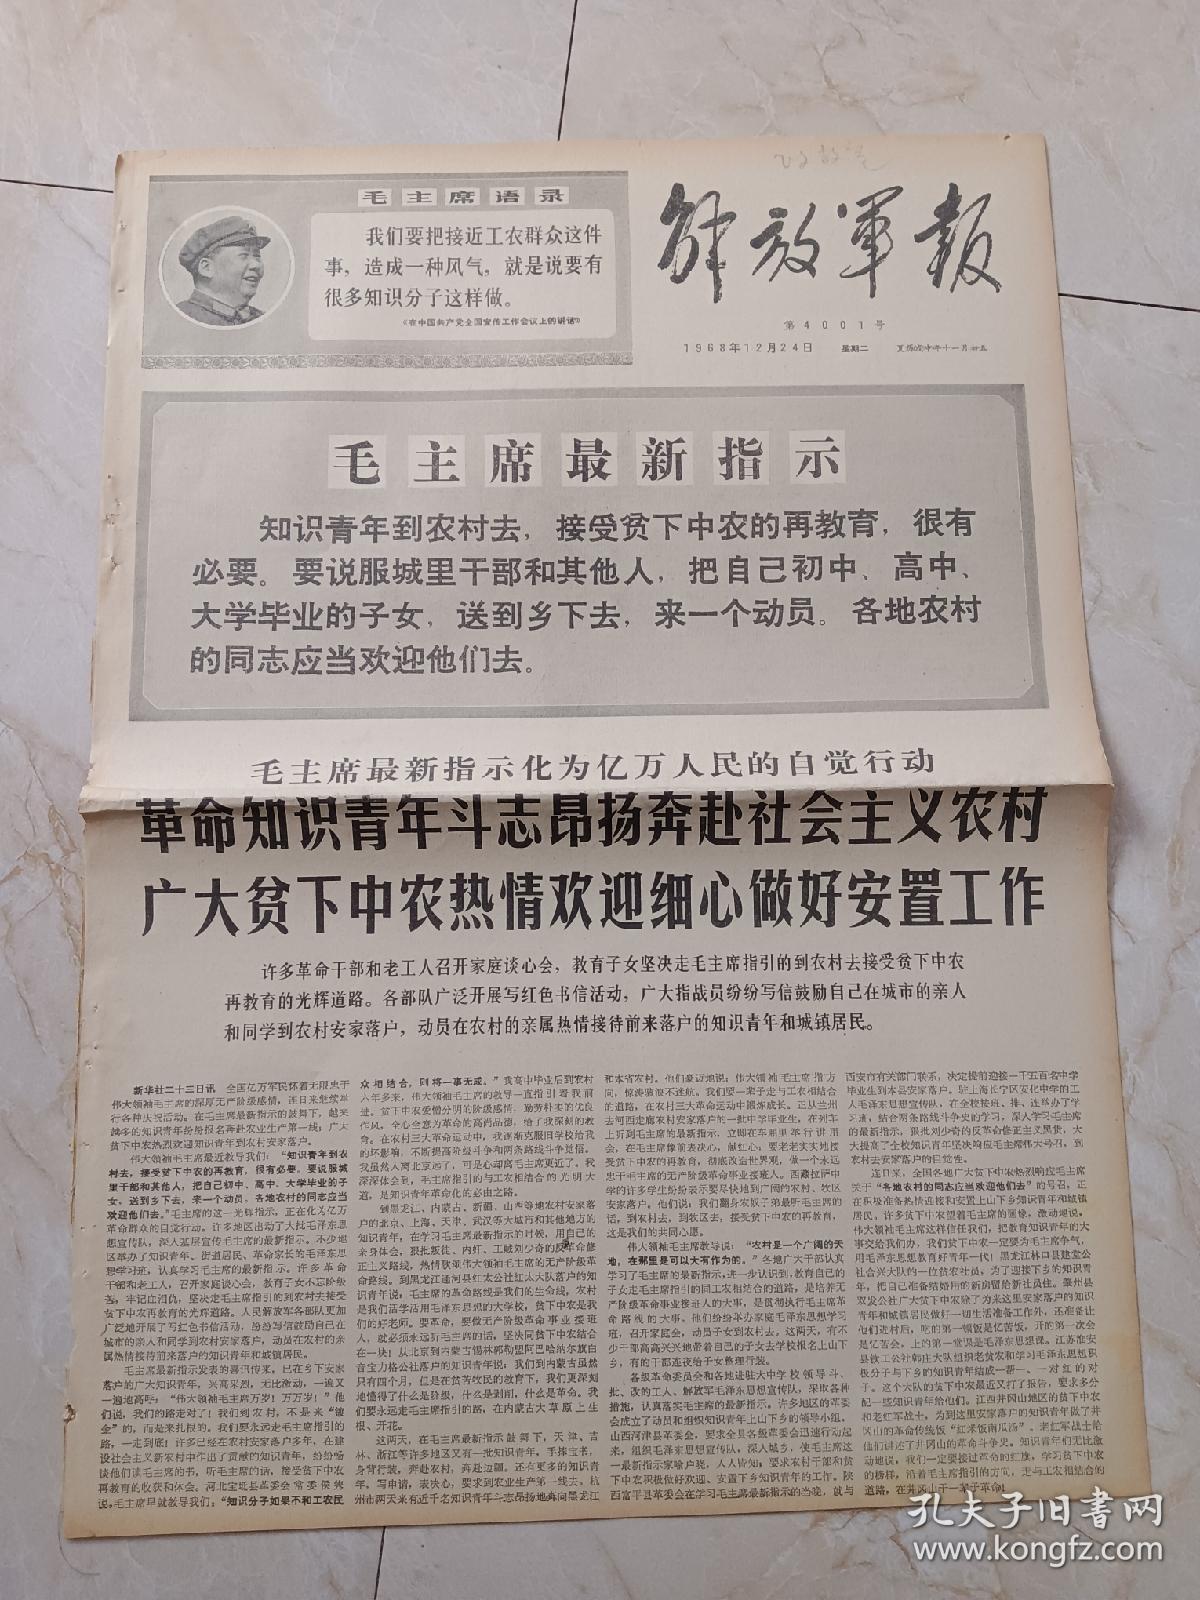 解放军报1968年12月24日。毛主席最新指示化亿万人民的自觉行动，革命知识青年都是昂扬奔赴社会主义农村，广大贫下中农热情欢迎细心做好安置工作。